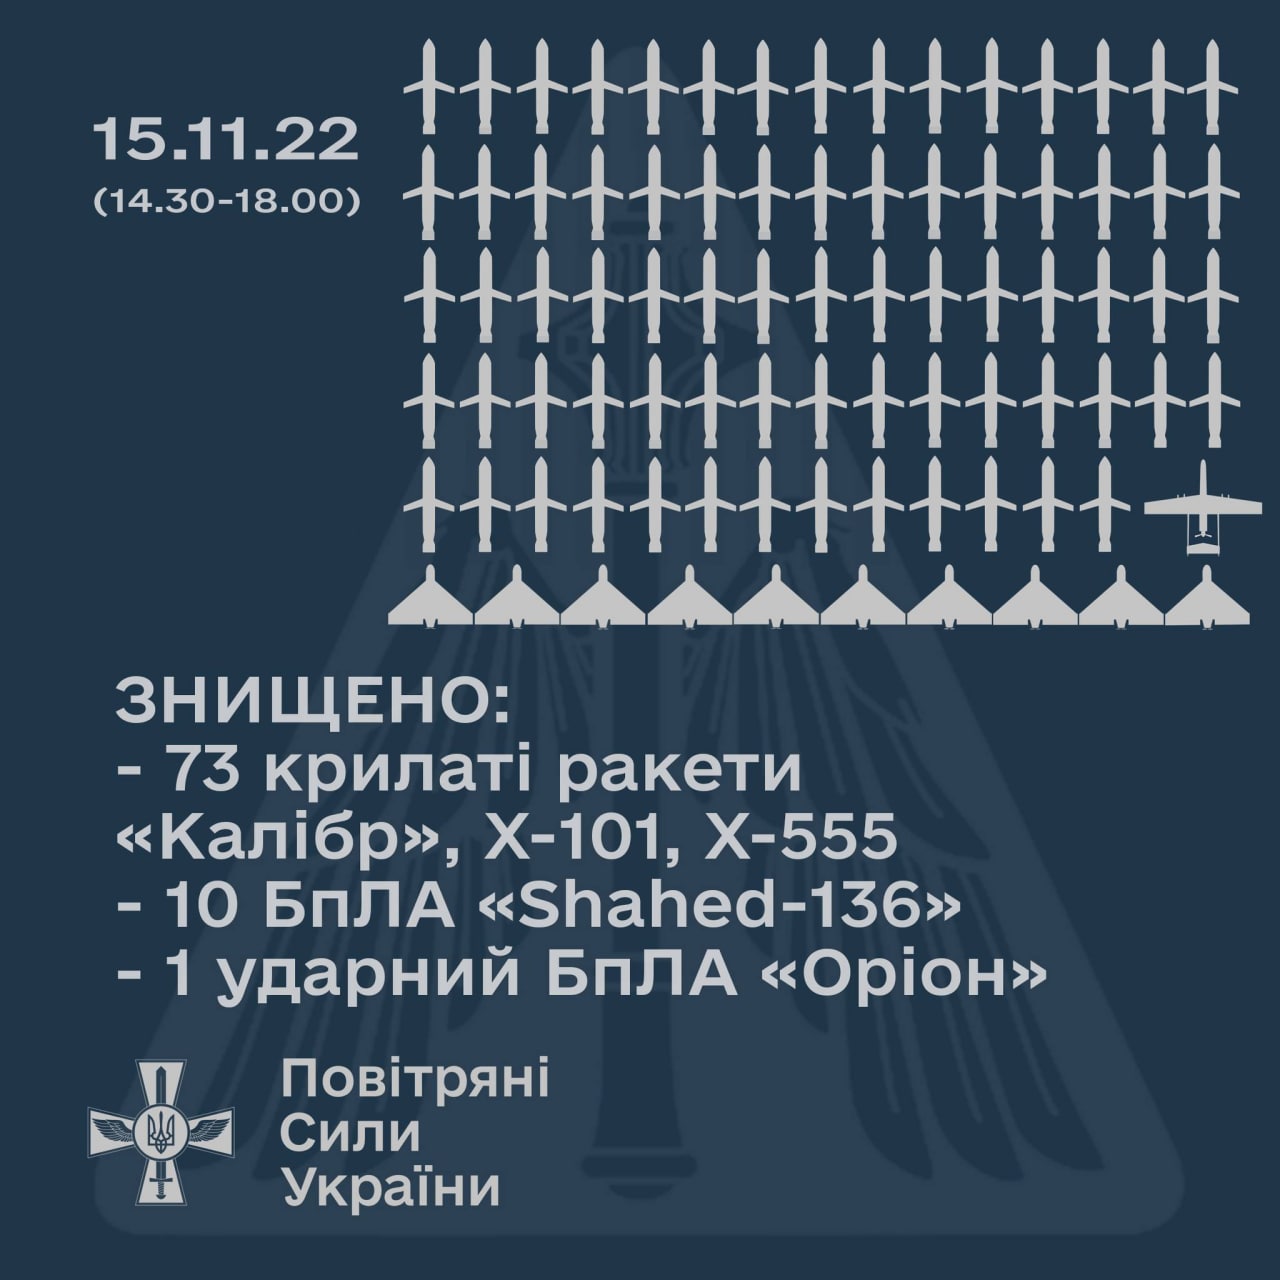 Статистка по сбитым ракетам и беспилотникам за время воздушных налетов 15 ноября